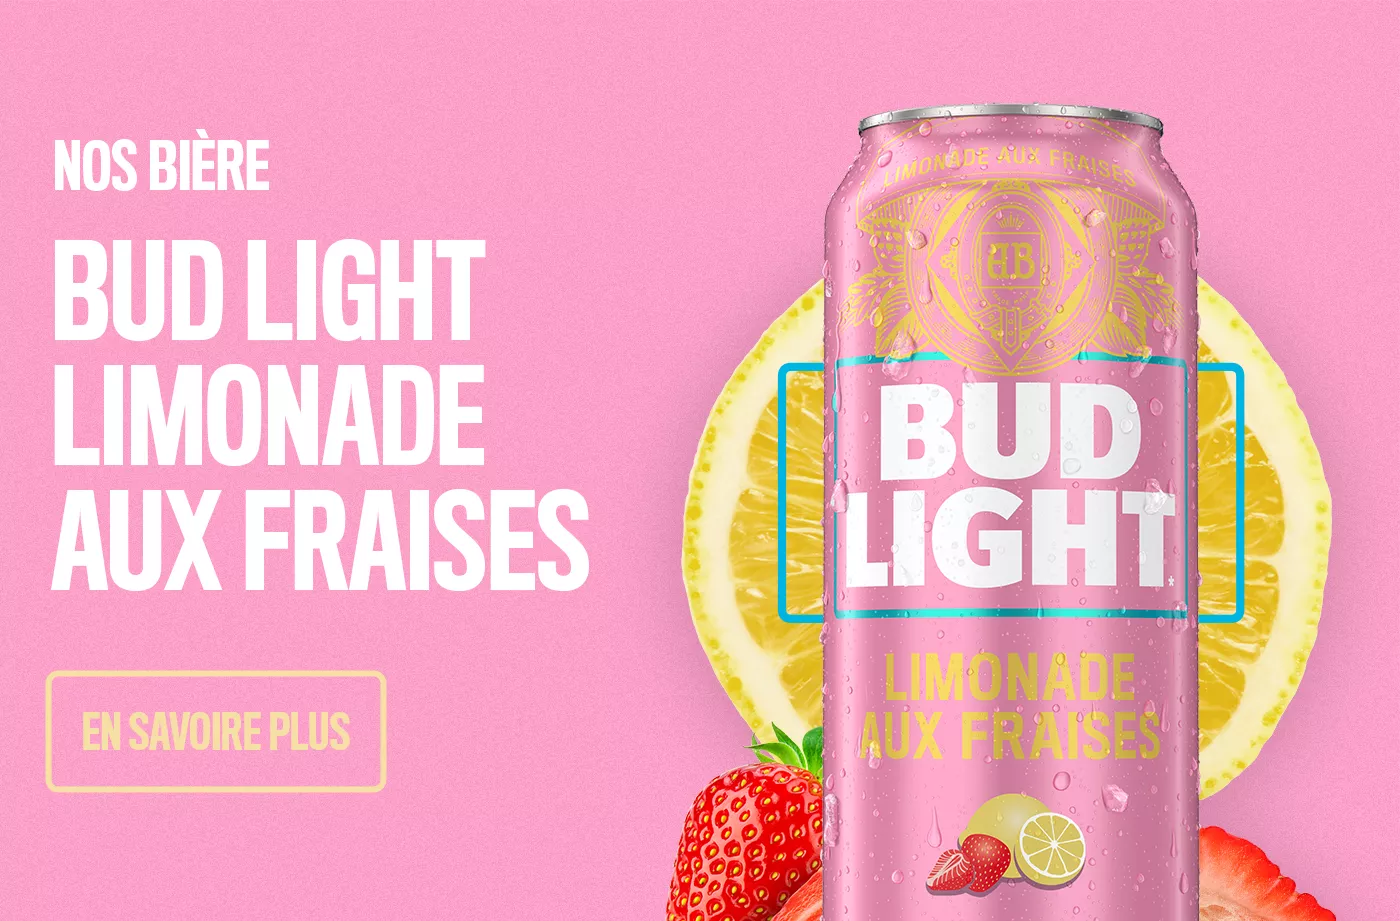 Cliquez pour en savoir plus sur Bud Light Limonade aux Fraises